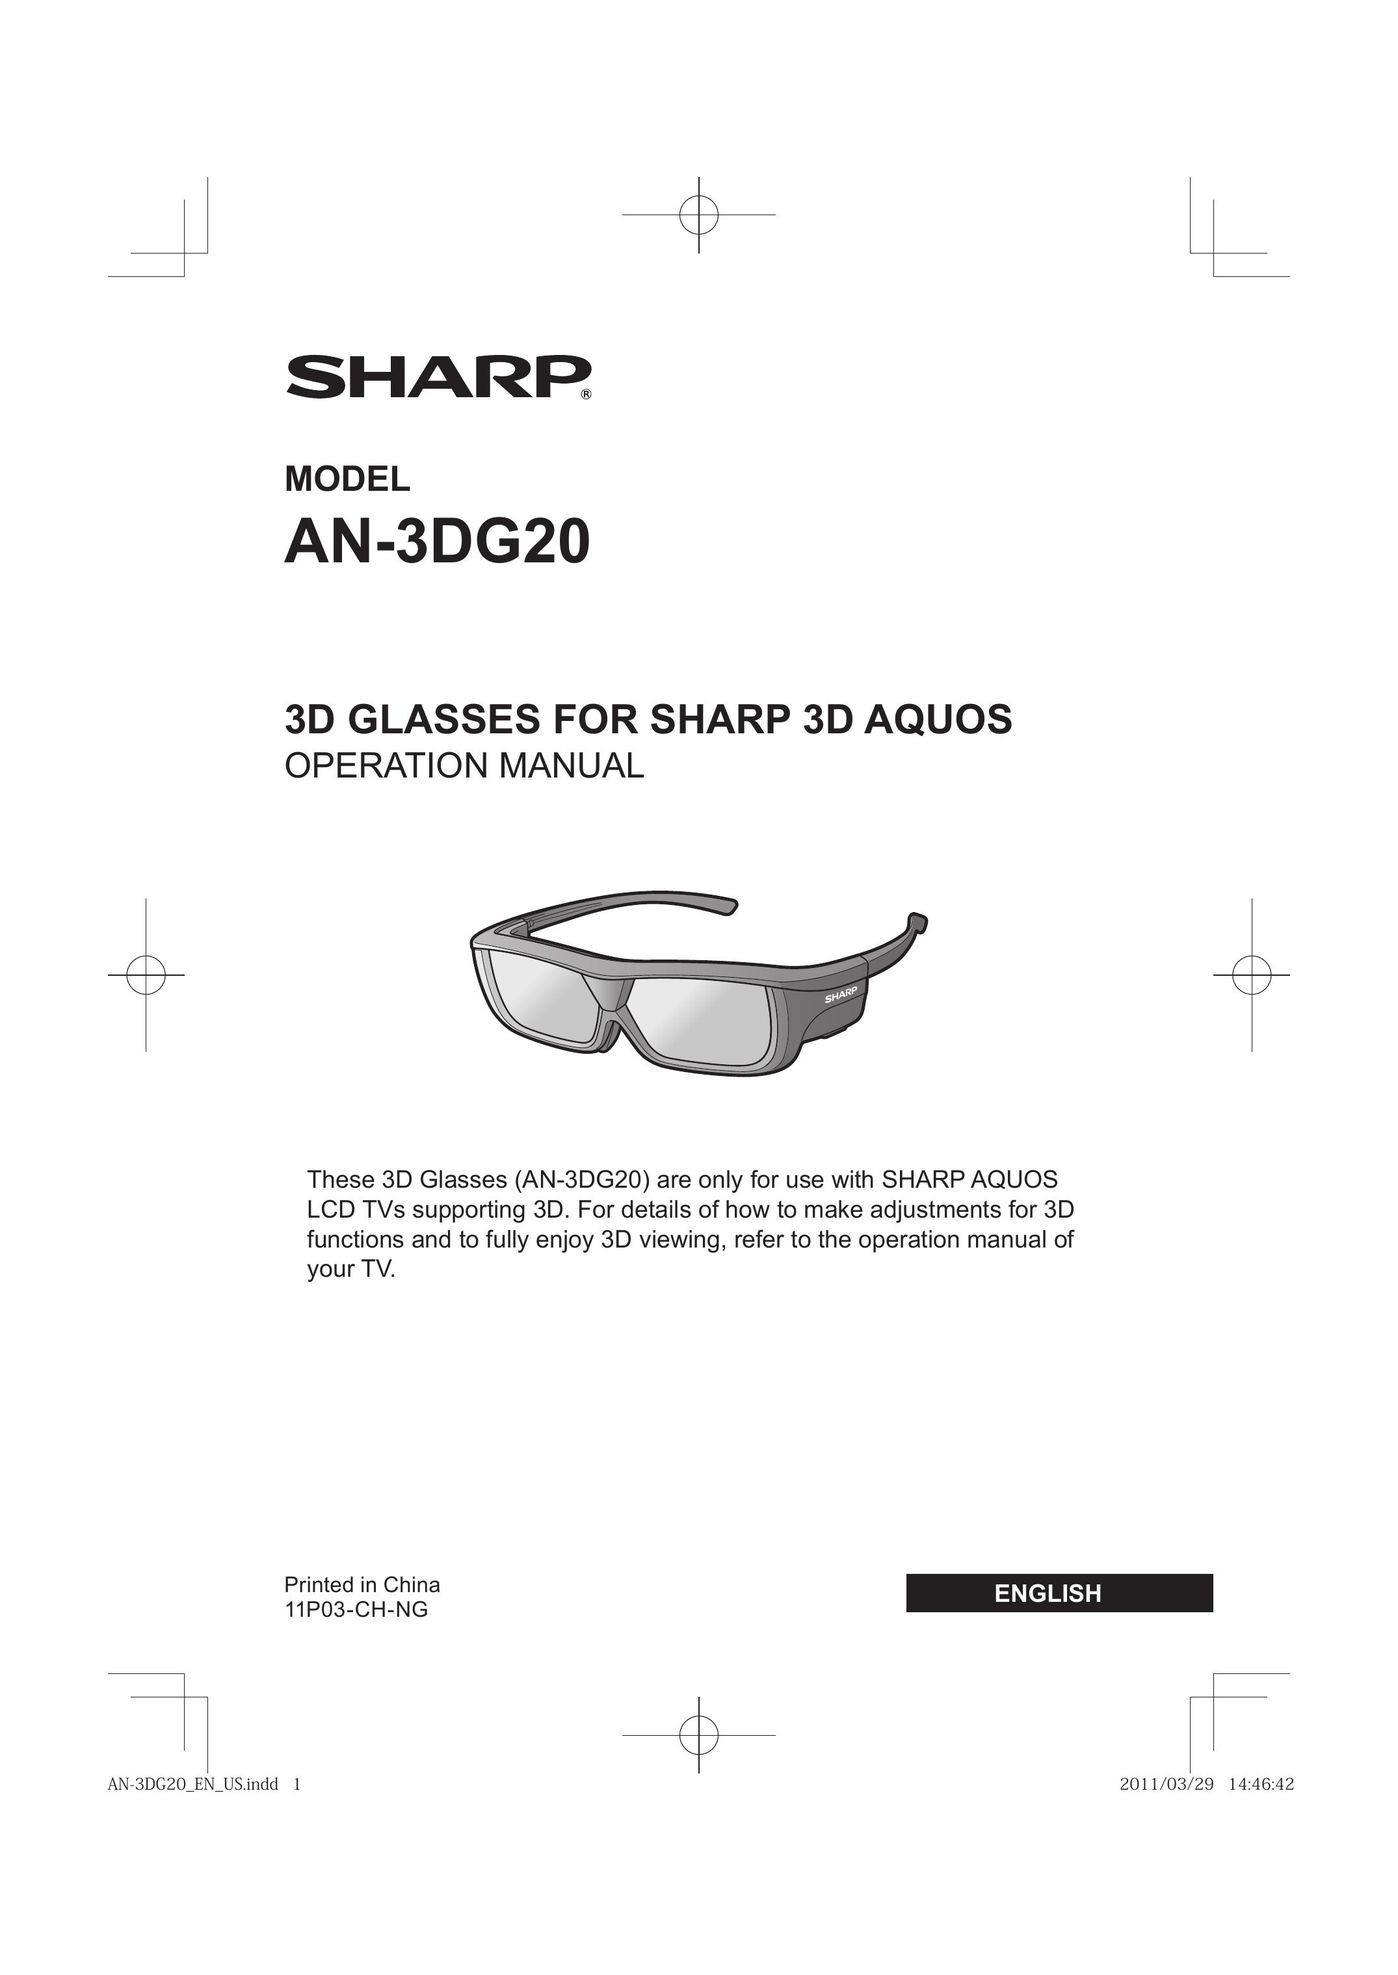 Sharp AN-3DG20 TV Video Accessories User Manual